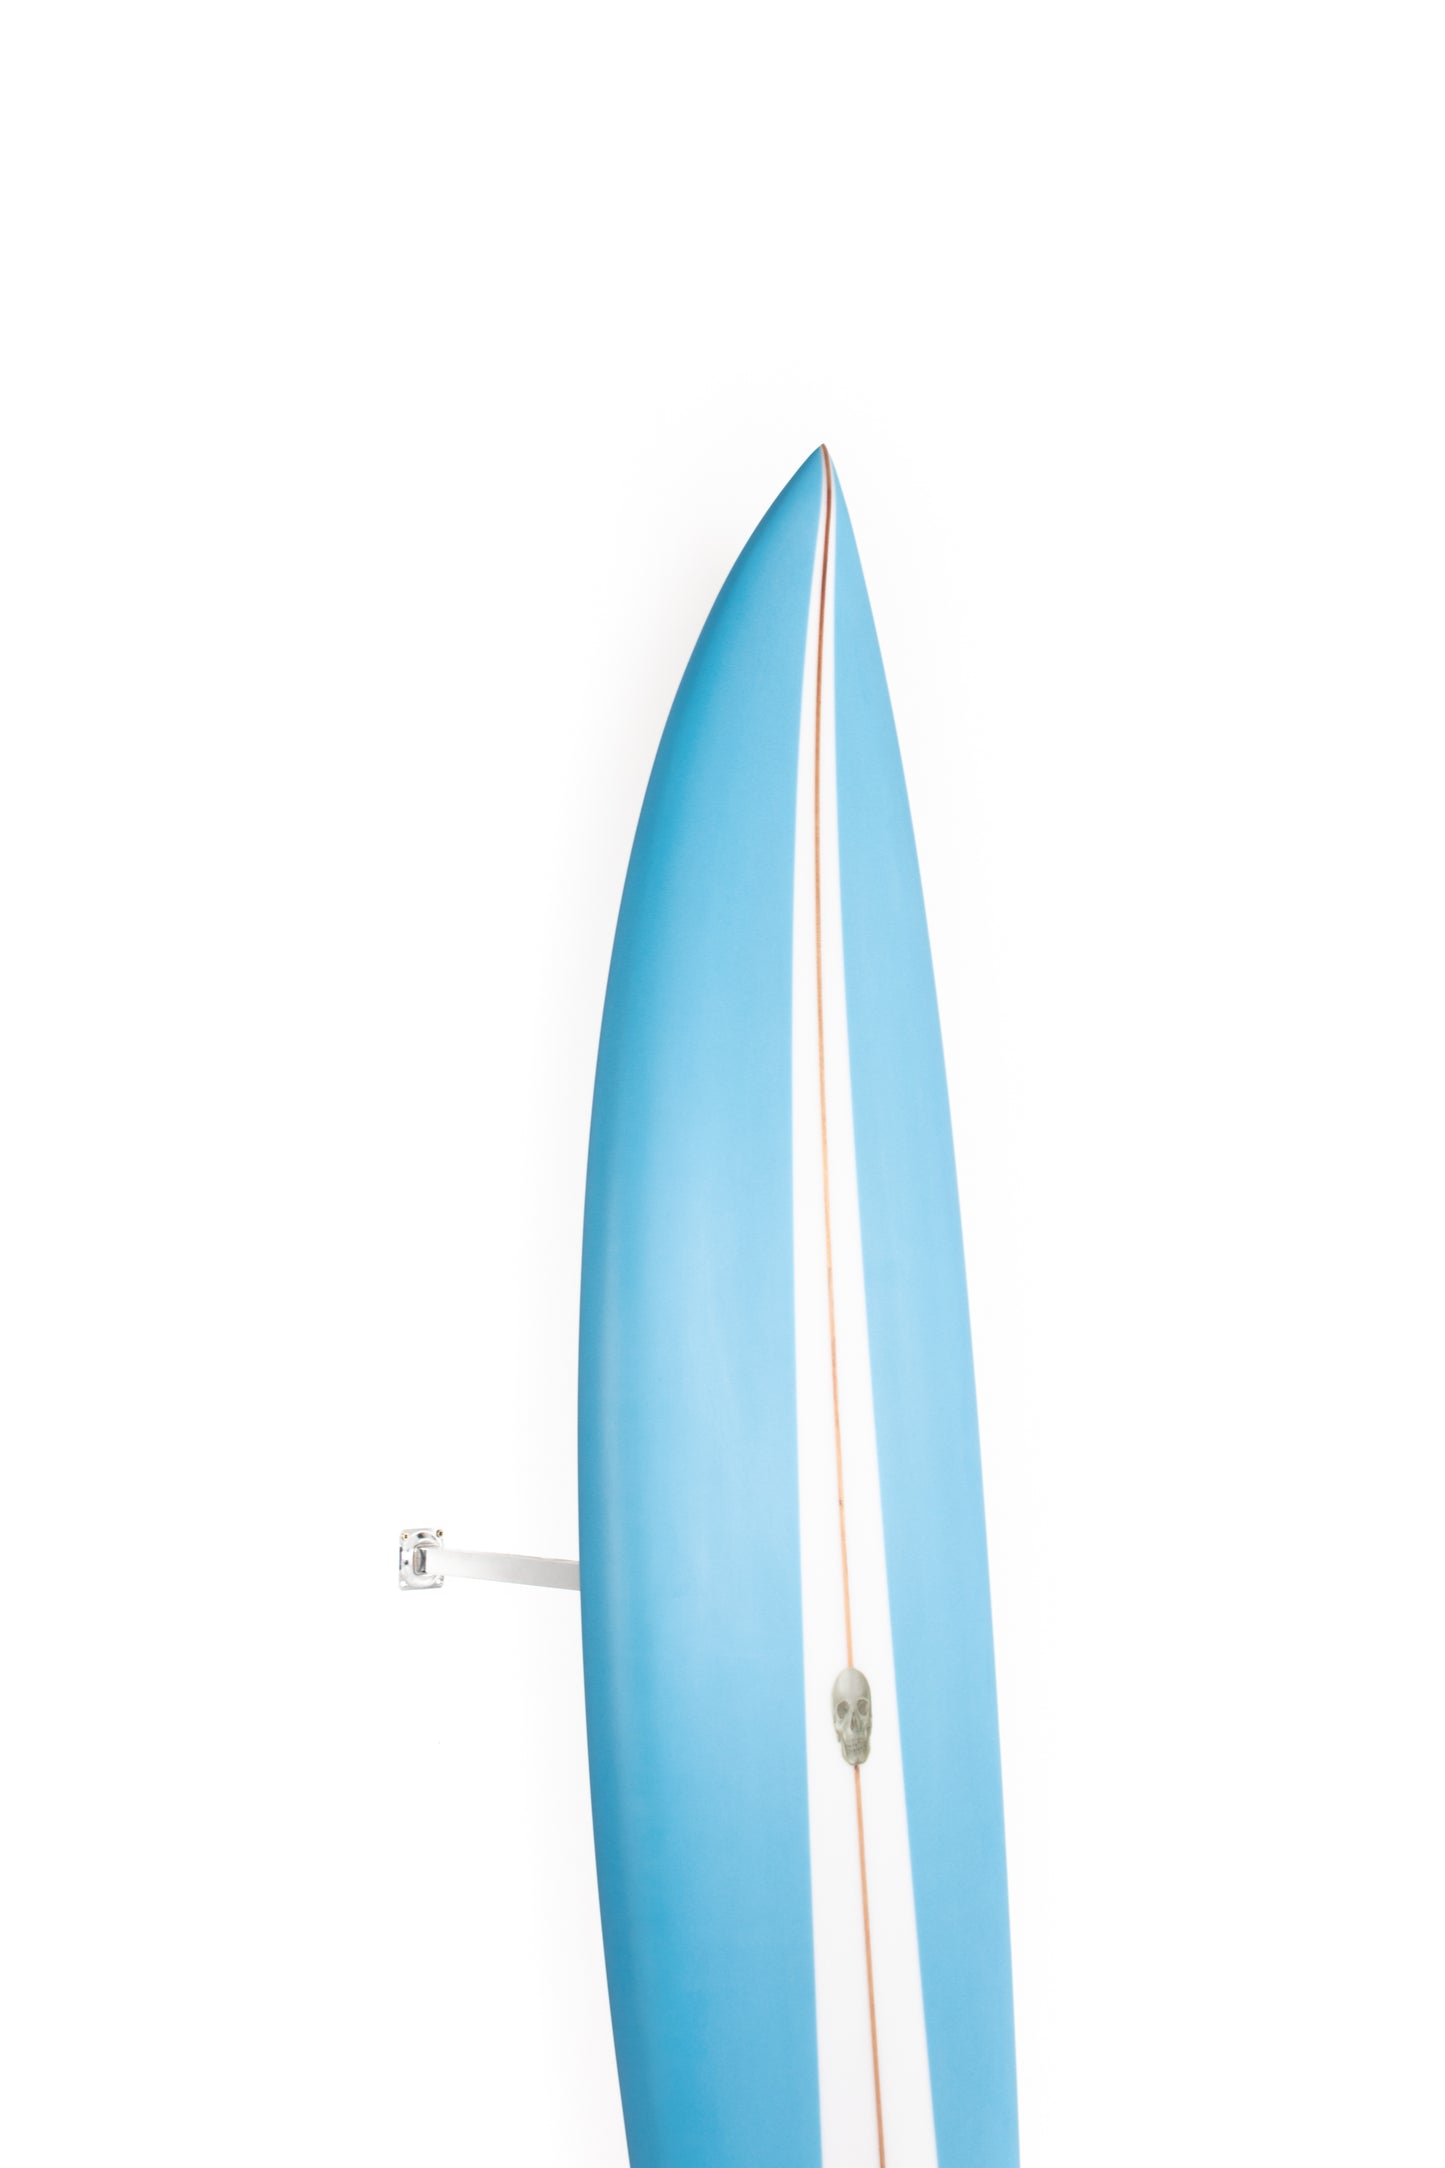 
                  
                    Pukas Surf Shop - Christenson Surfboards - NAUTILUS - 7'6" x 21 5/8 x 2 3/4 - CX05016
                  
                